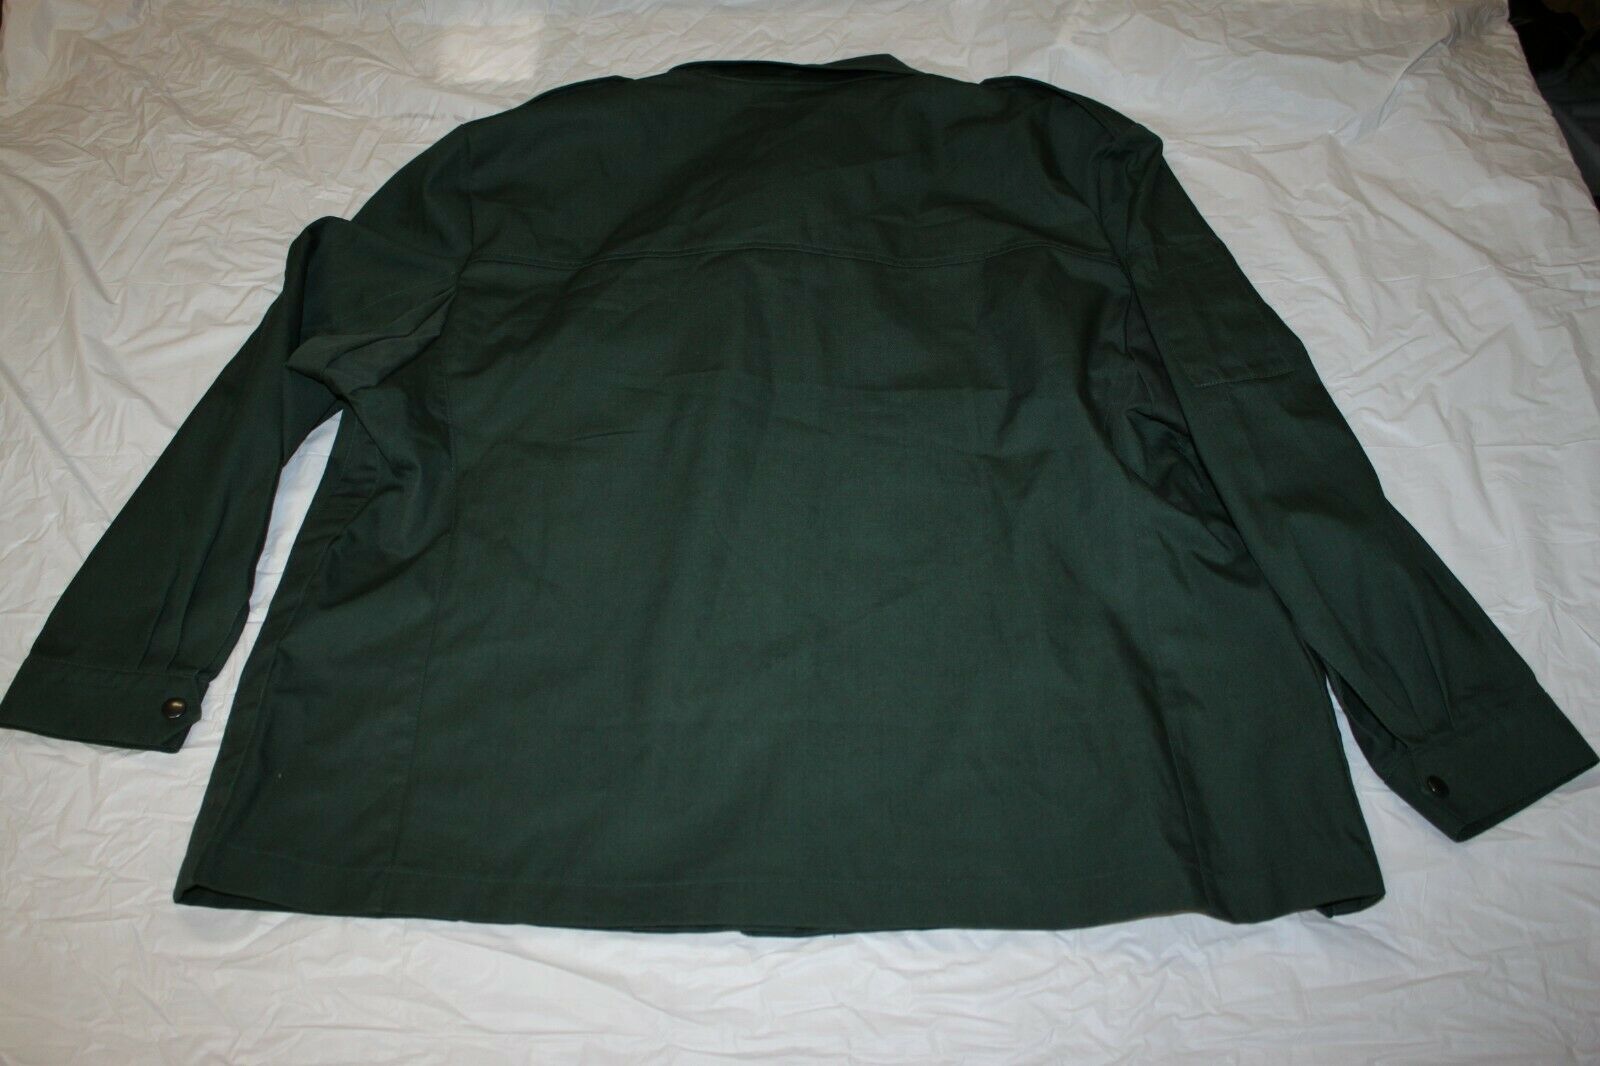 German Military Firmen NR 524 Button Zipper Shirt Medium Officer Green Euro 19